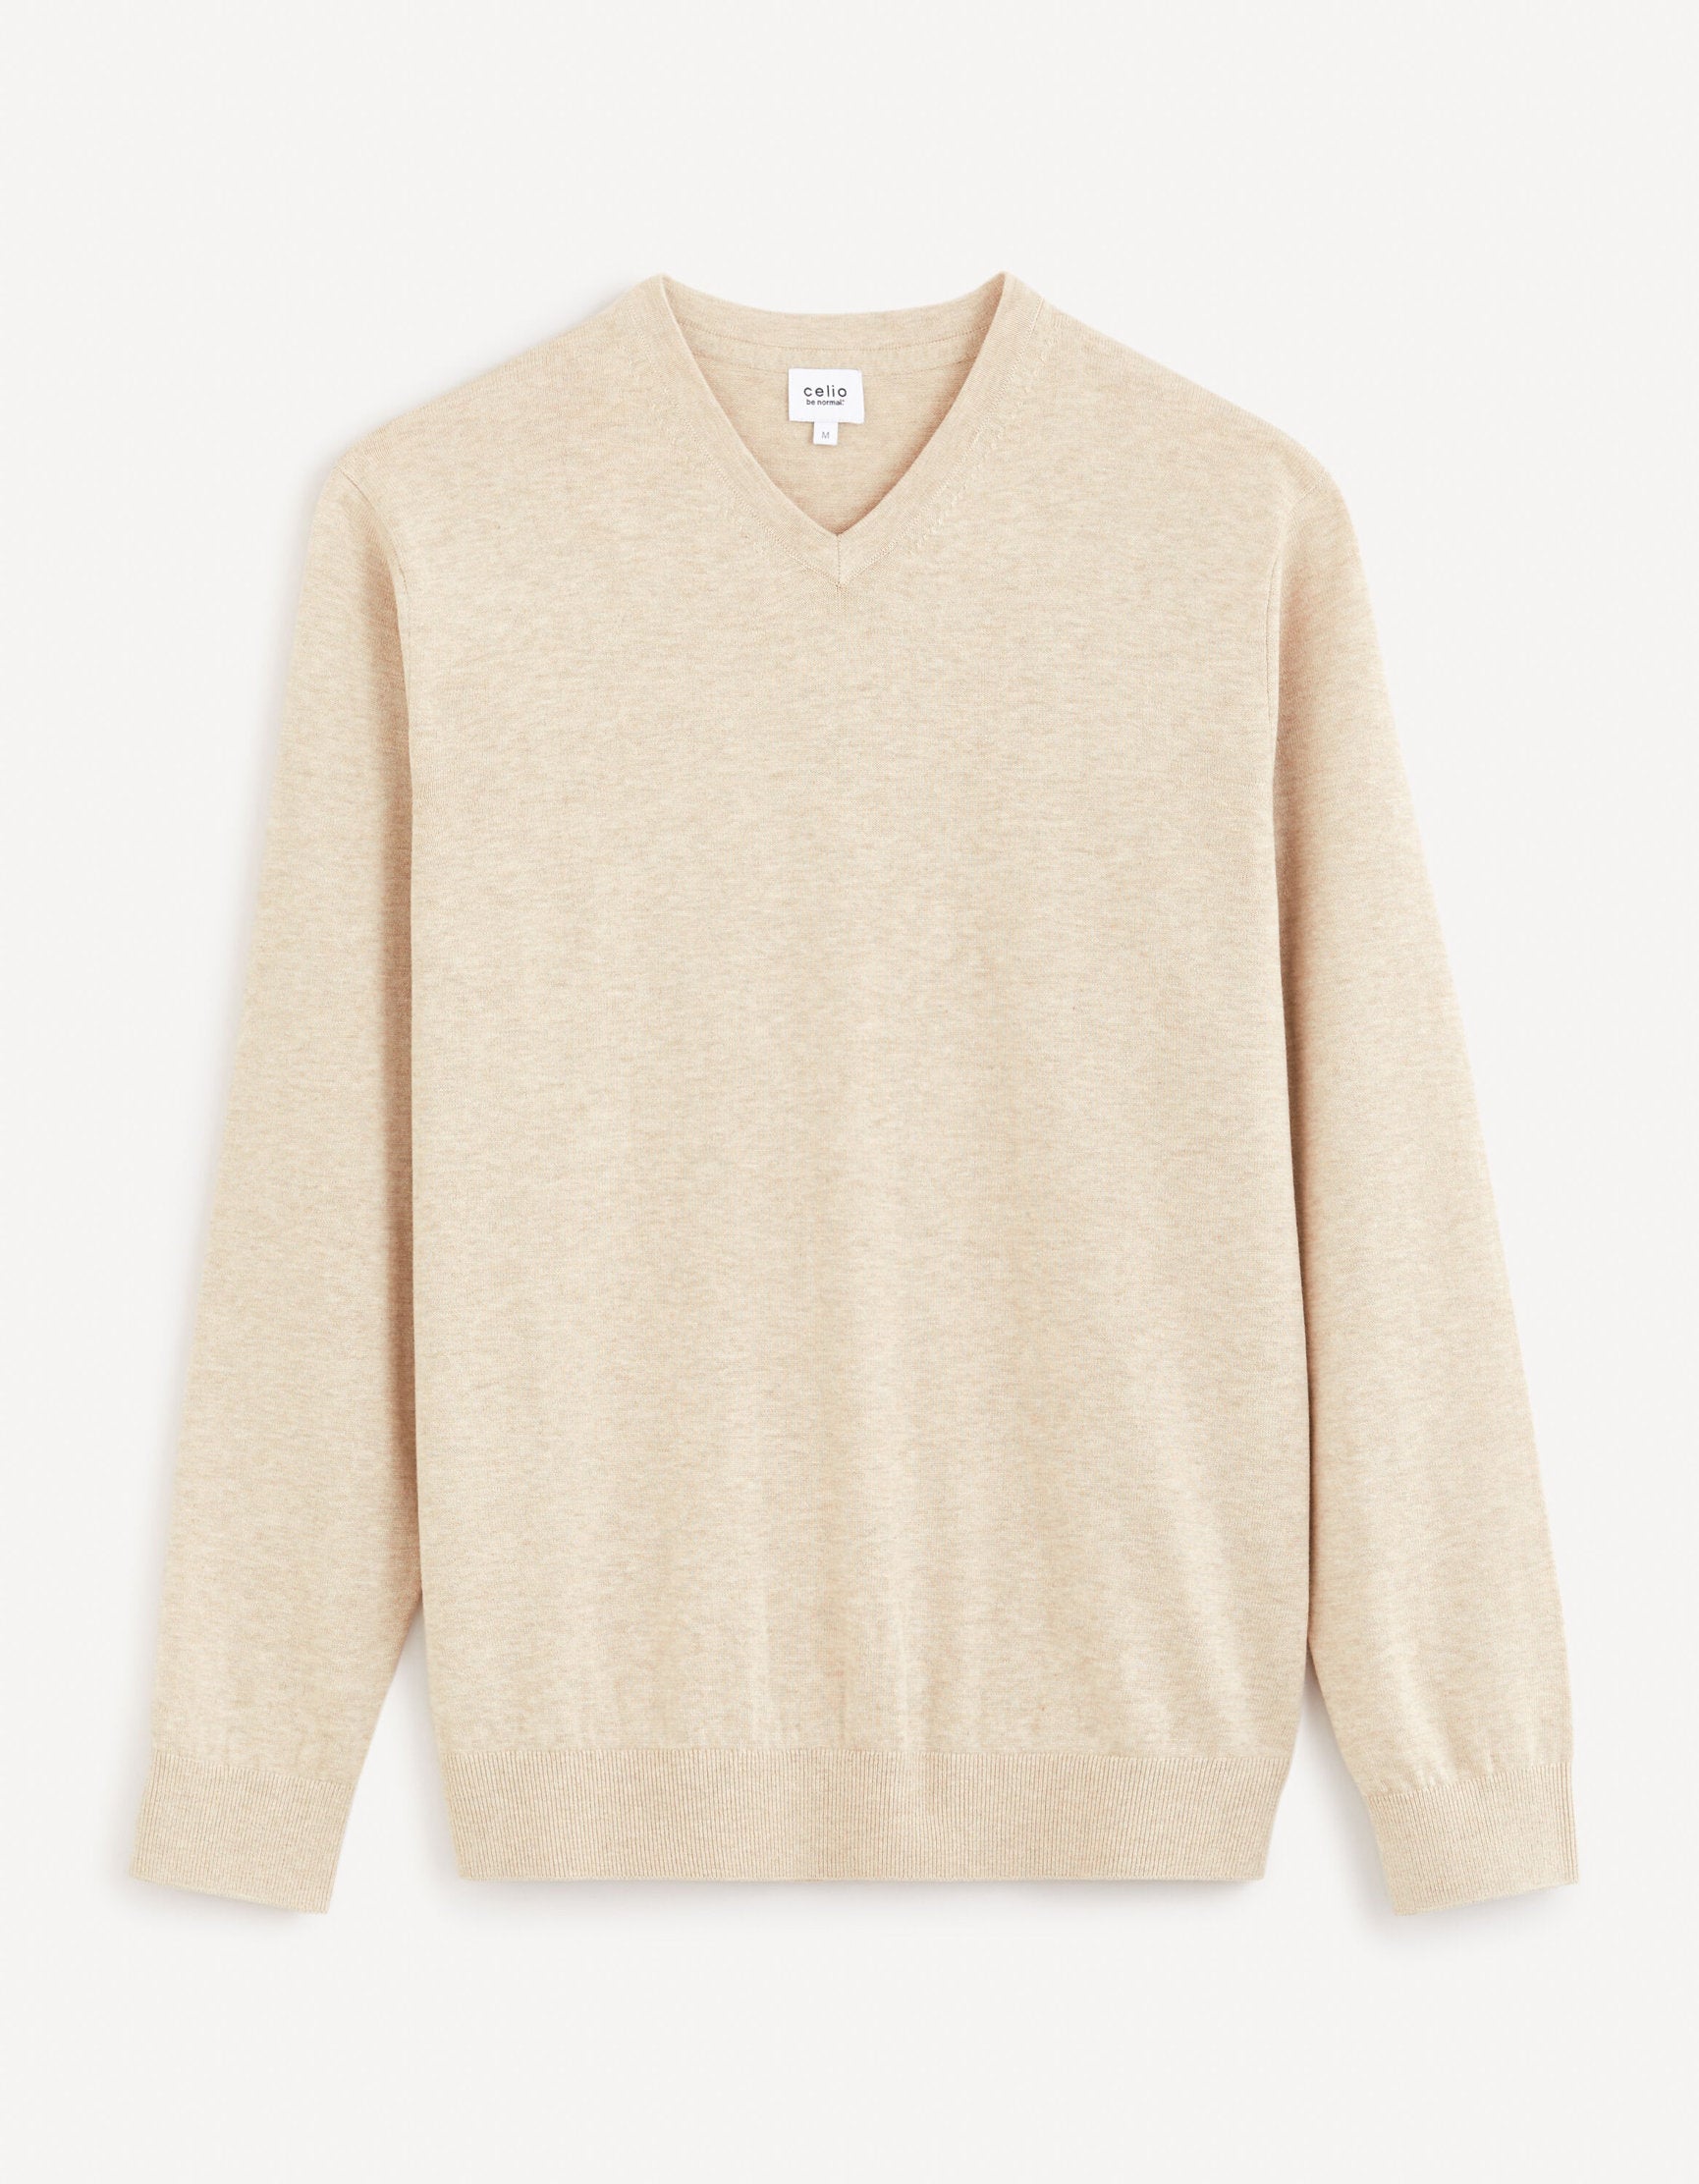 100% Cotton V-Neck Sweater - Beige_DECOTON_BEIGE MEL_02